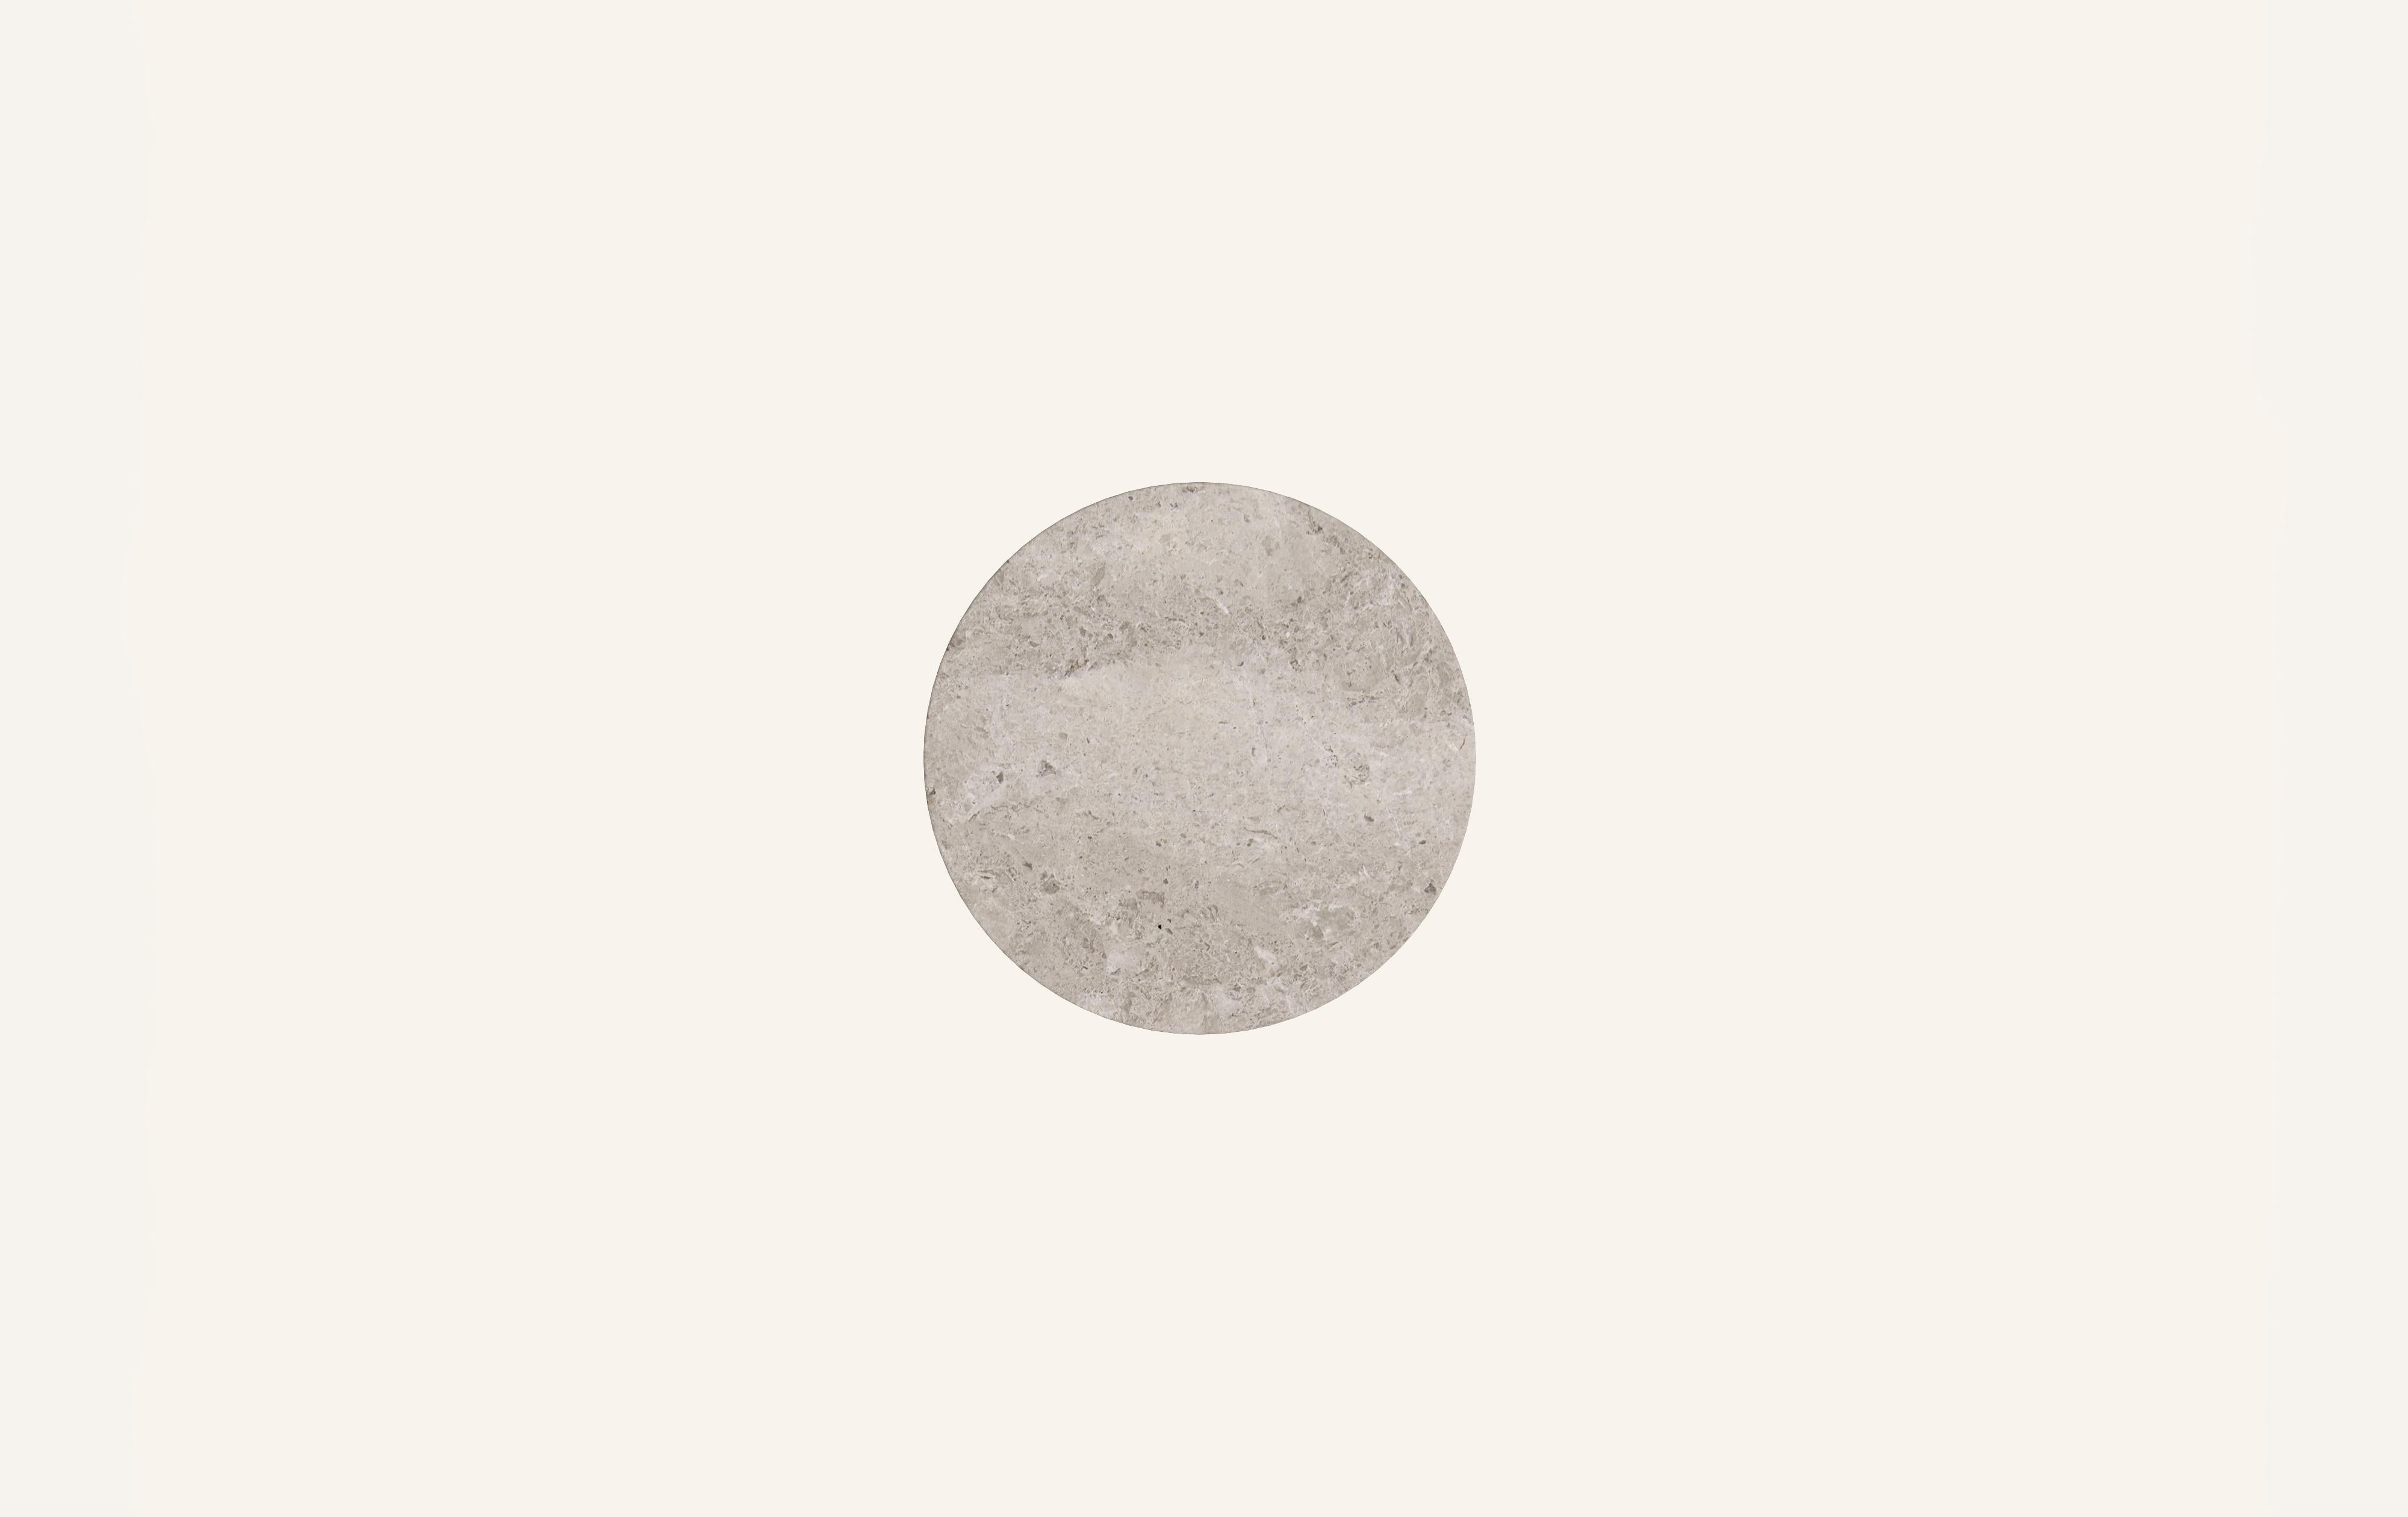 American FORM(LA) Cono Round Side Table 24”L x 24”W x 21”H Tundra Gray Marble For Sale